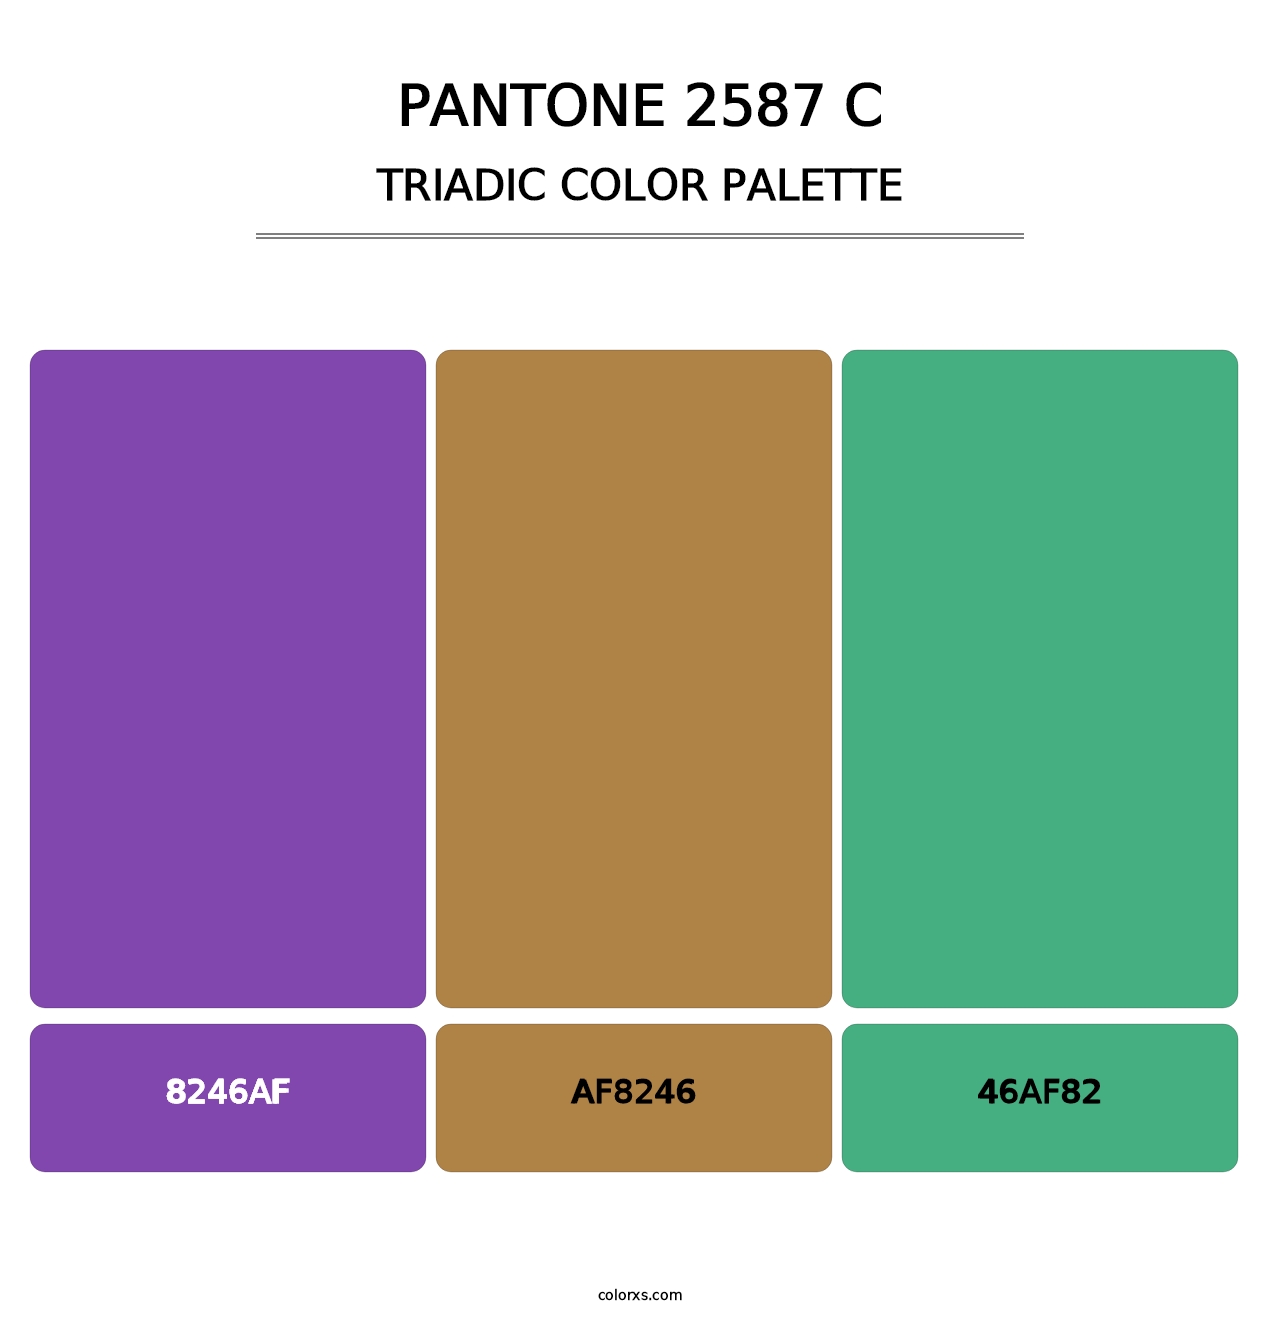 PANTONE 2587 C - Triadic Color Palette